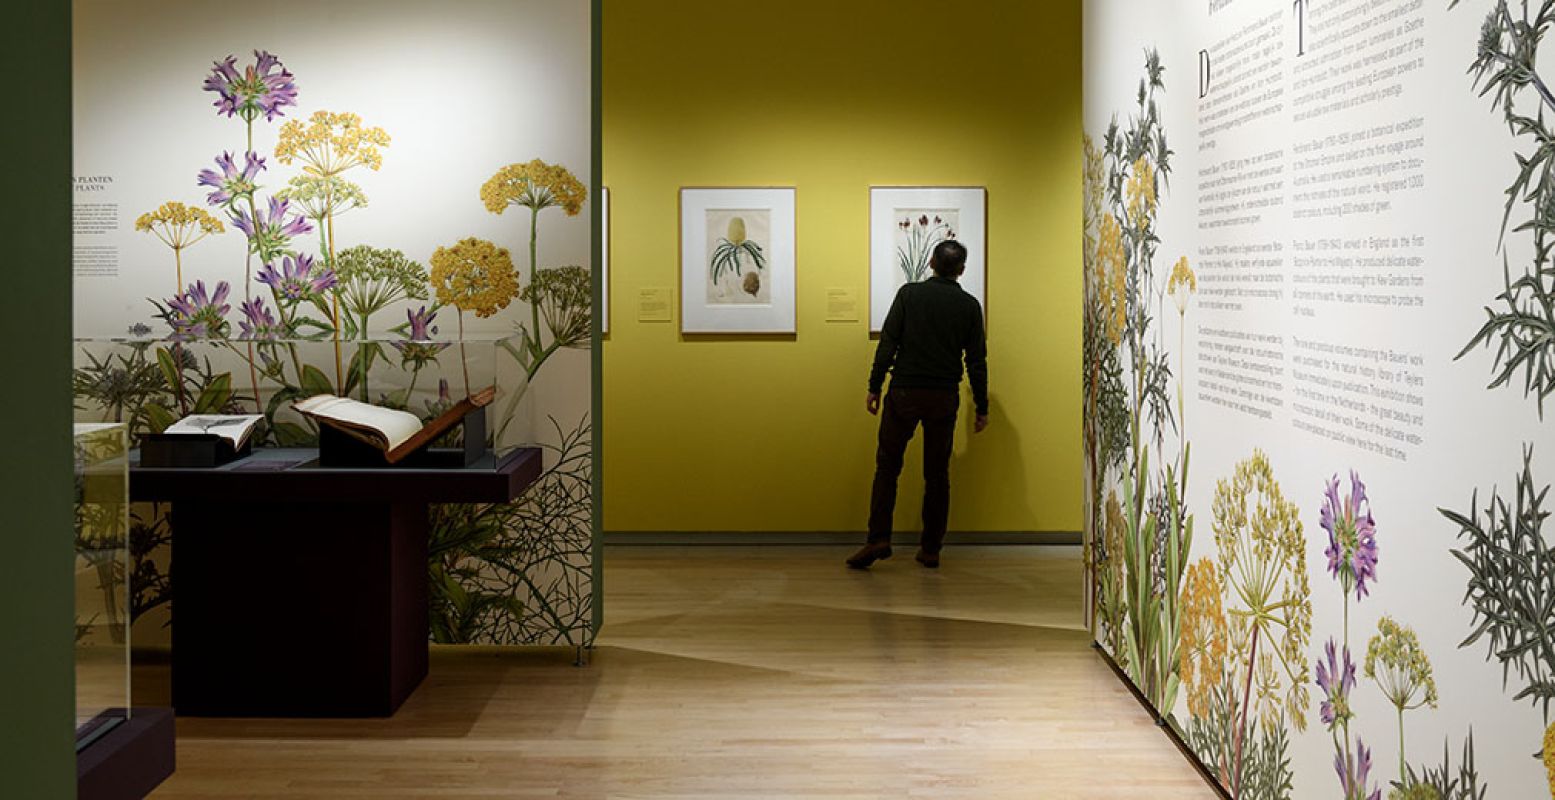 Bekijk prachtige bloementekeningen in Teylers Museum. Foto: Teylers Museum